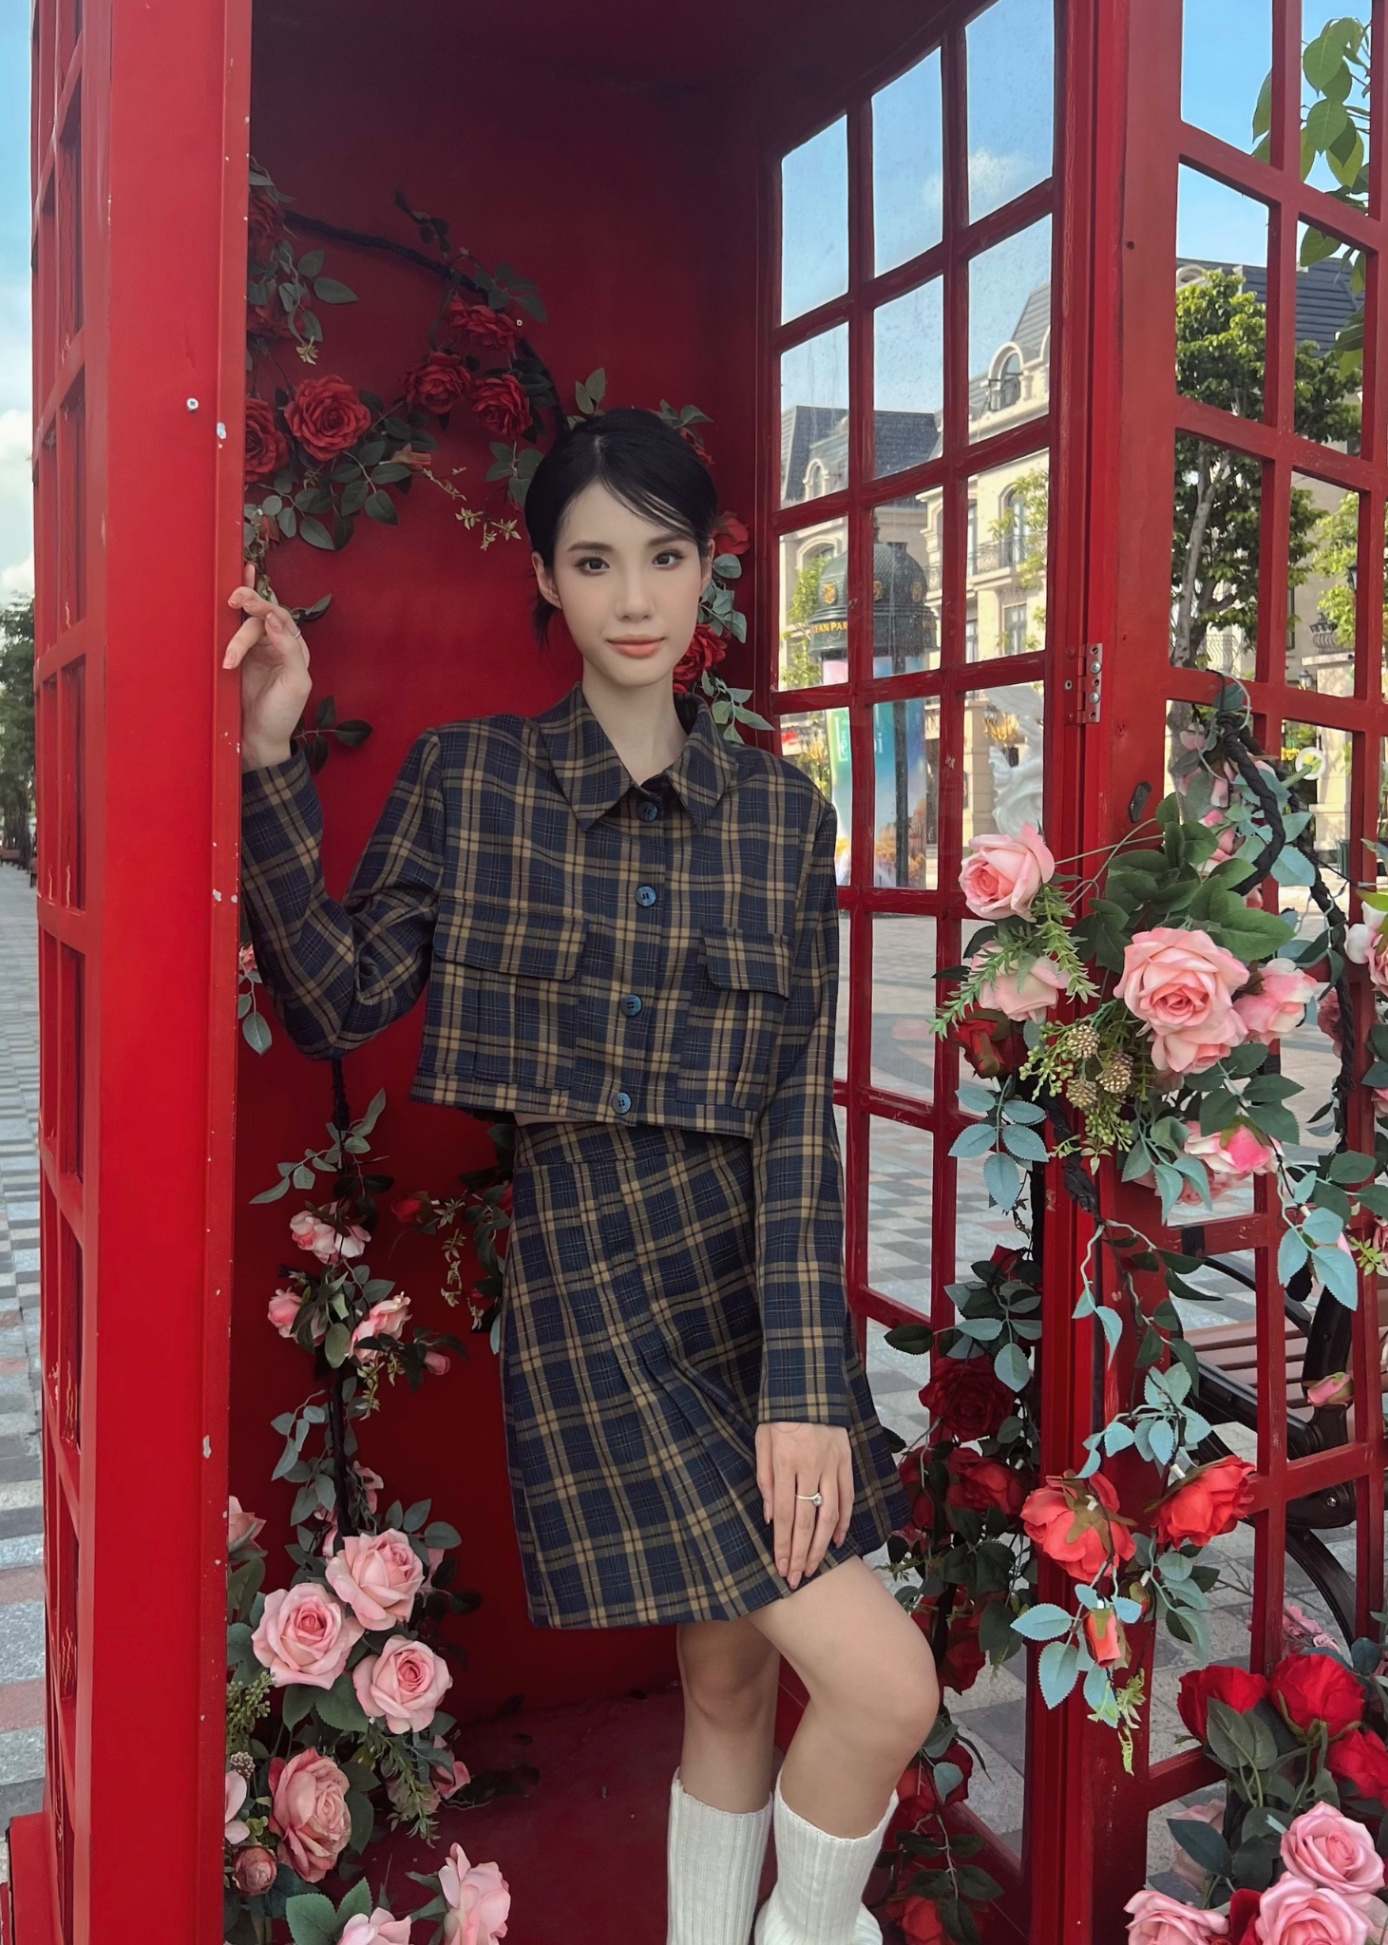 Váy Xòe Kẻ Caro - khuyến mại giá rẻ mới nhất tháng 3【Tốp #1 Bán Chạy】